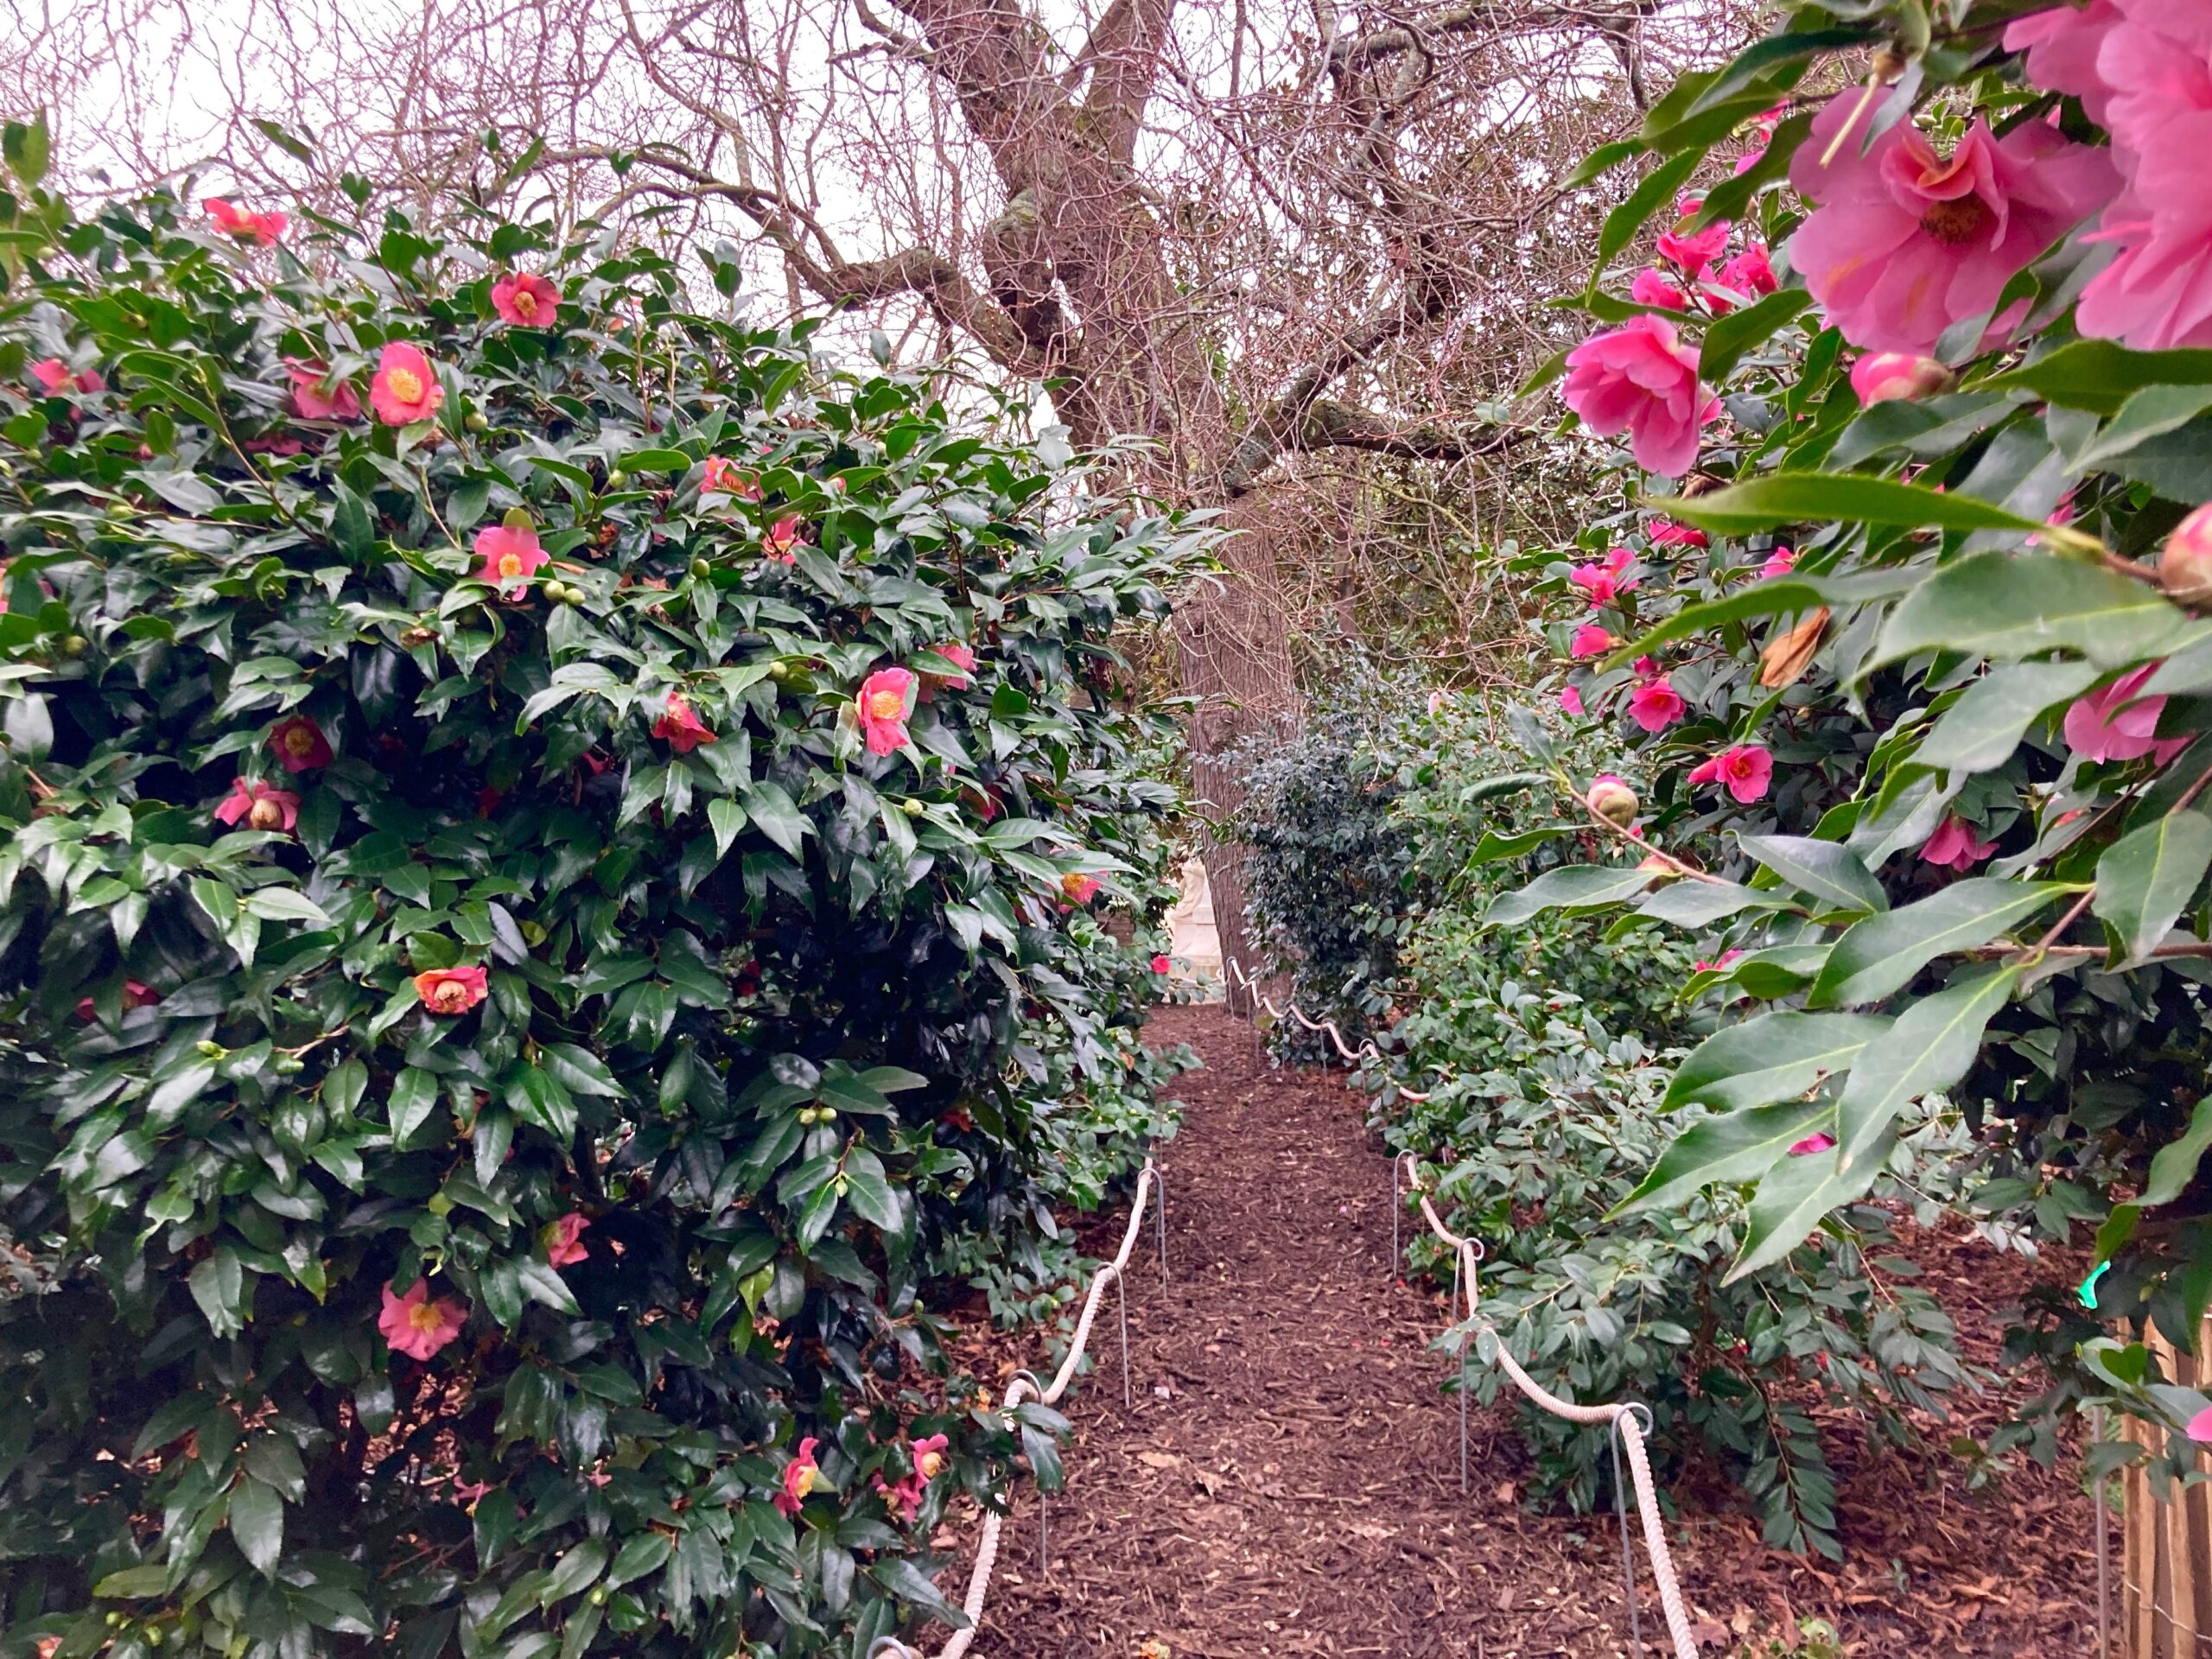 Au Jardin des Plantes de Nantes, un sentier guide les pas dans un labyrinthe de camélias.